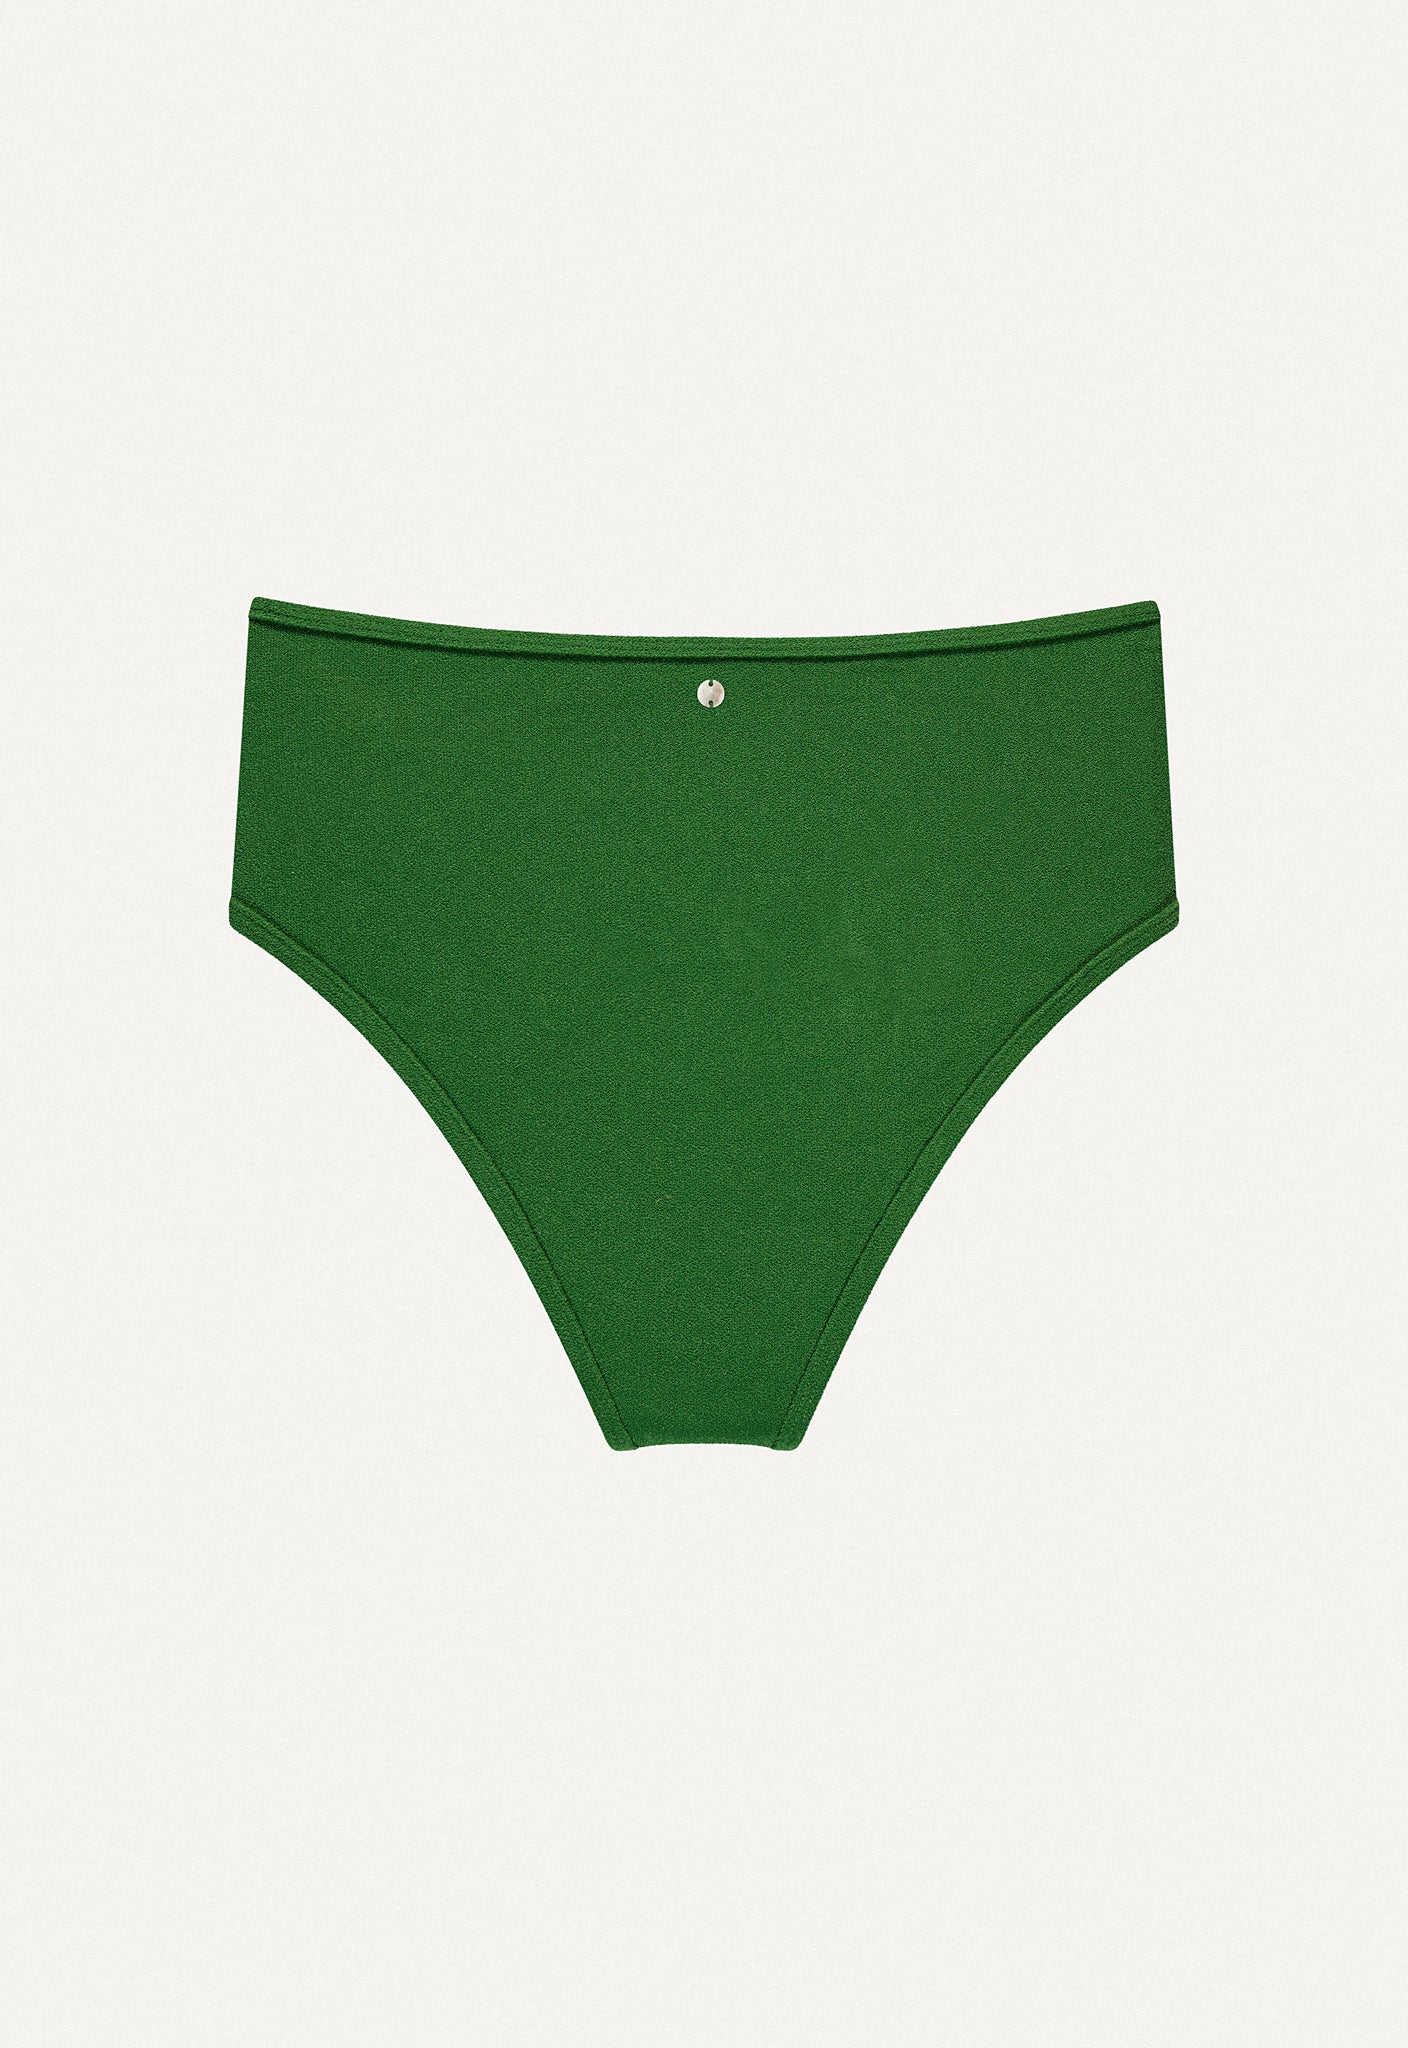 Bikini Bottom "Samun" in dark green terry